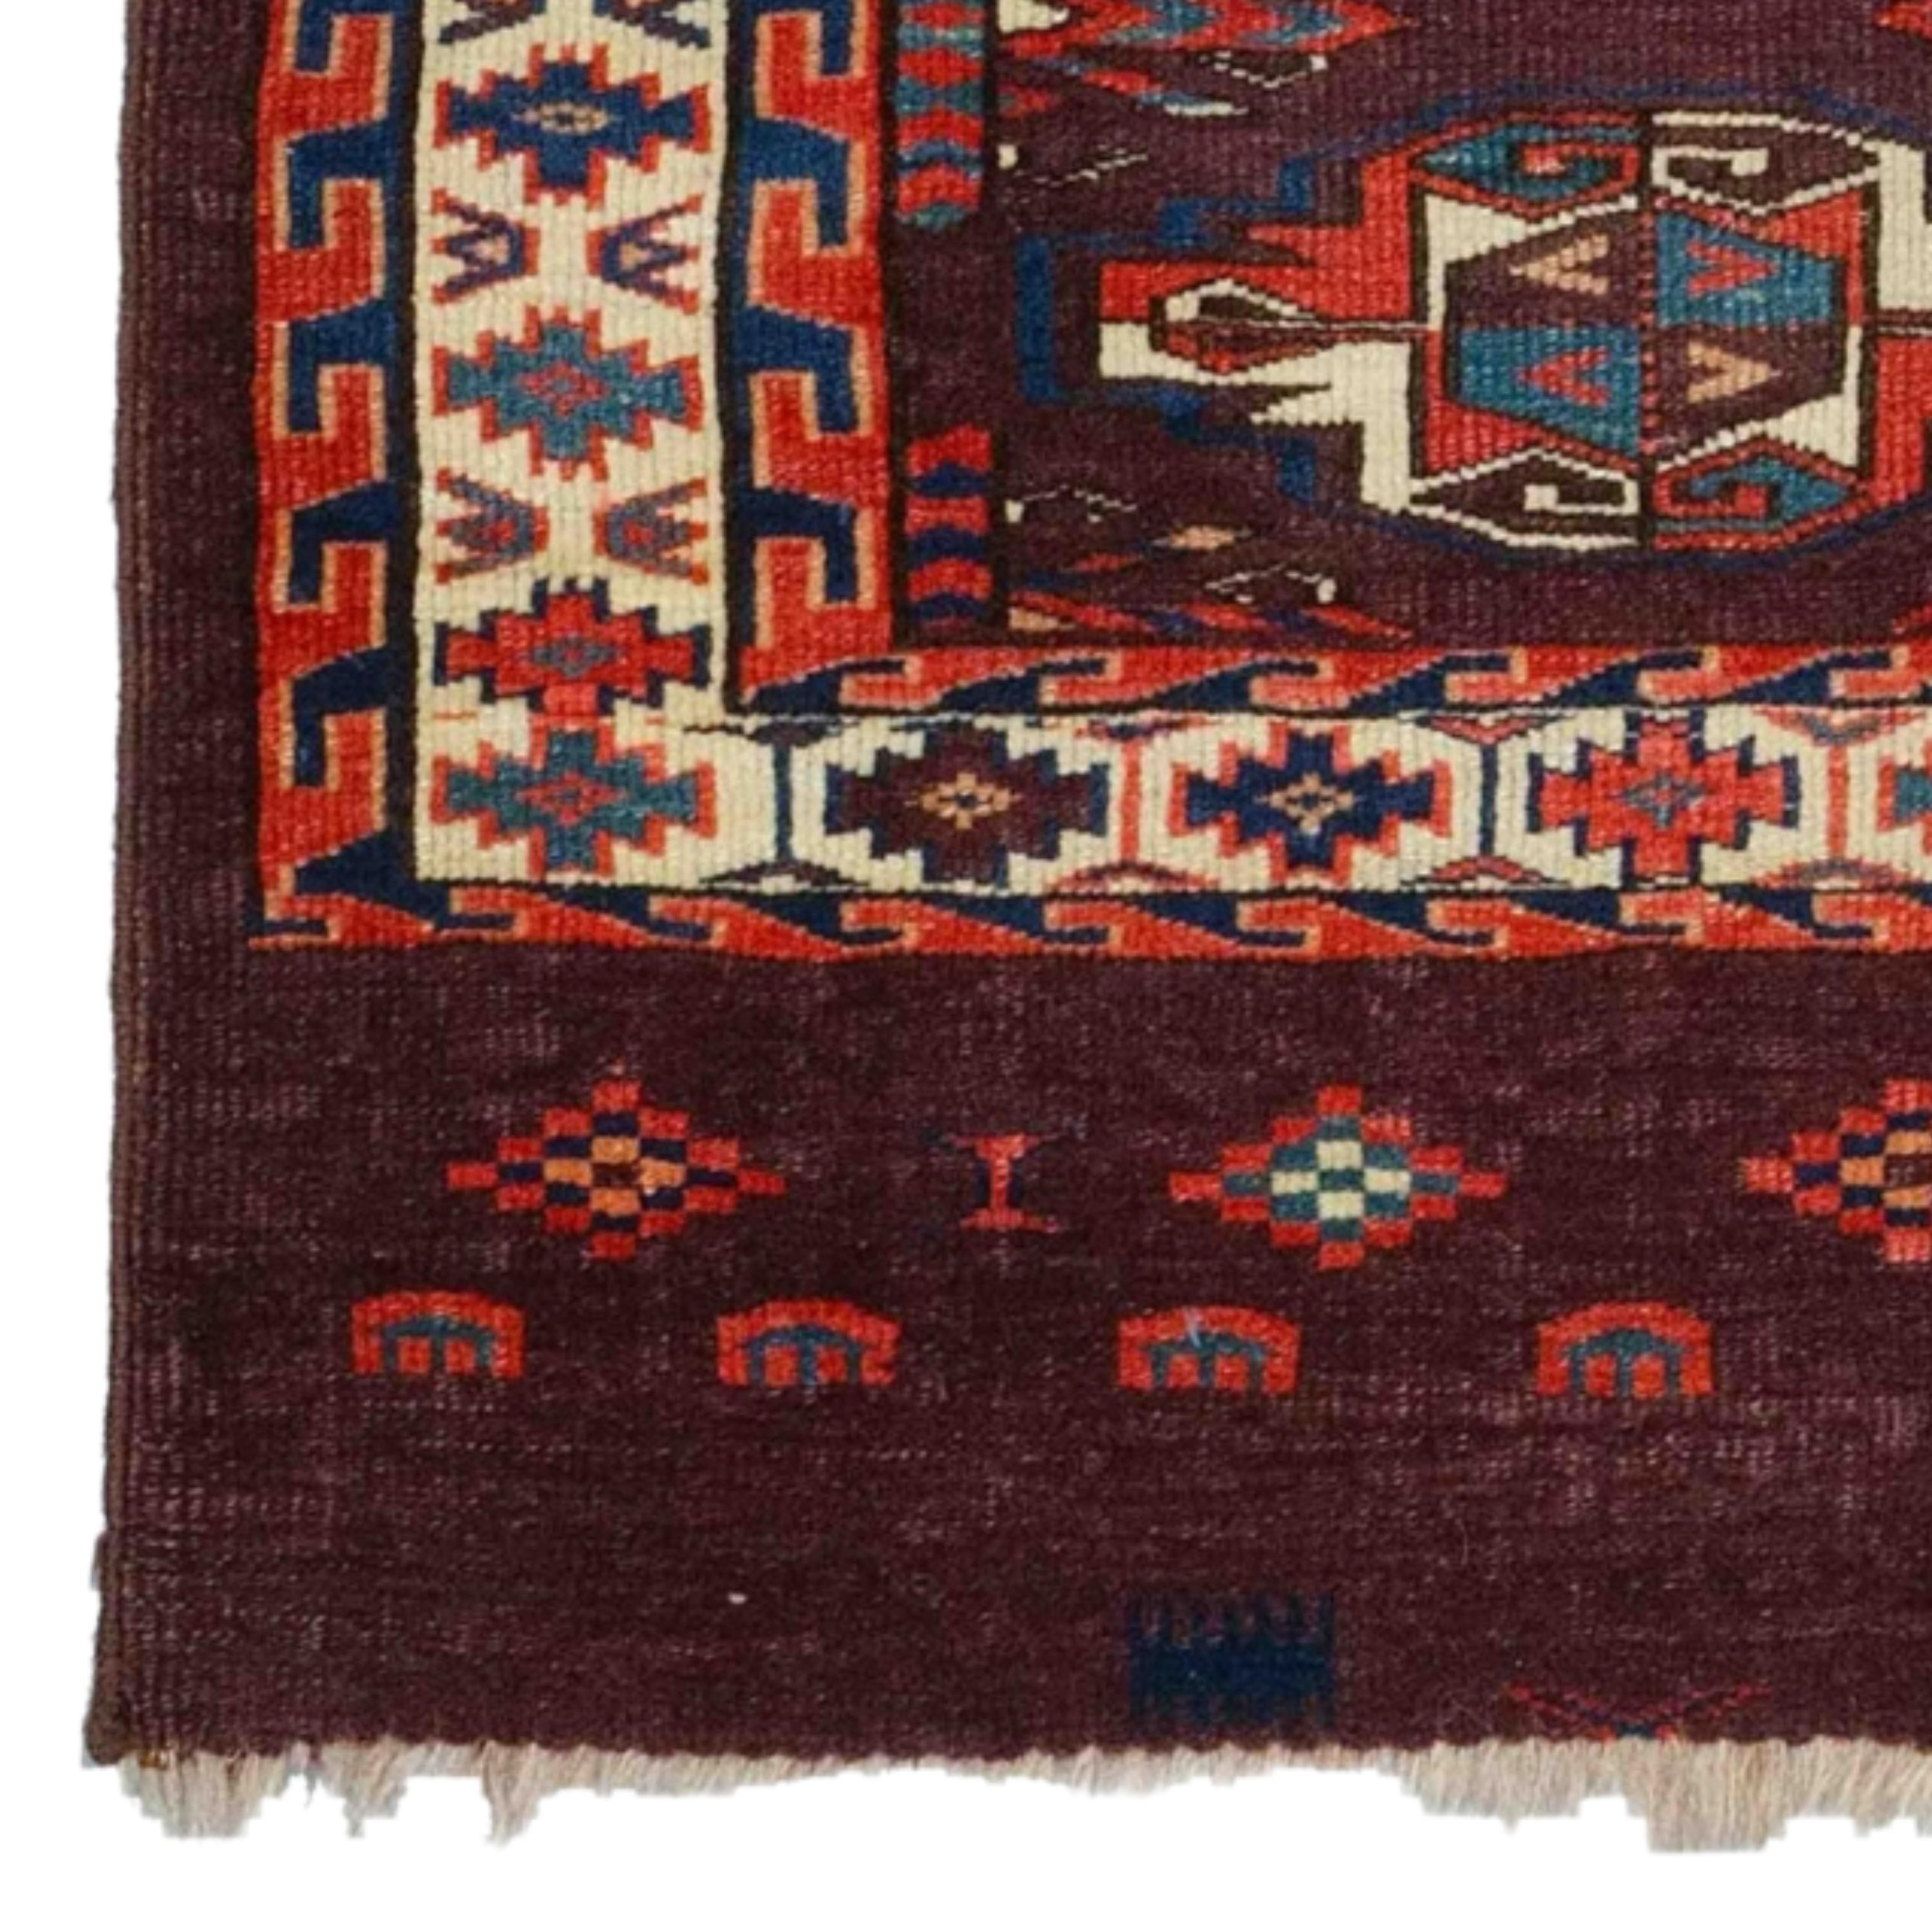 Dieser exquisite turkmenische Tschowal-Teppich aus dem 19. Jahrhundert ist ein Kunstwerk, das sorgfältig gewebt wurde und den Test der Zeit überstanden hat. Die reiche Farbpalette und die komplizierten Muster offenbaren die beeindruckende Schönheit